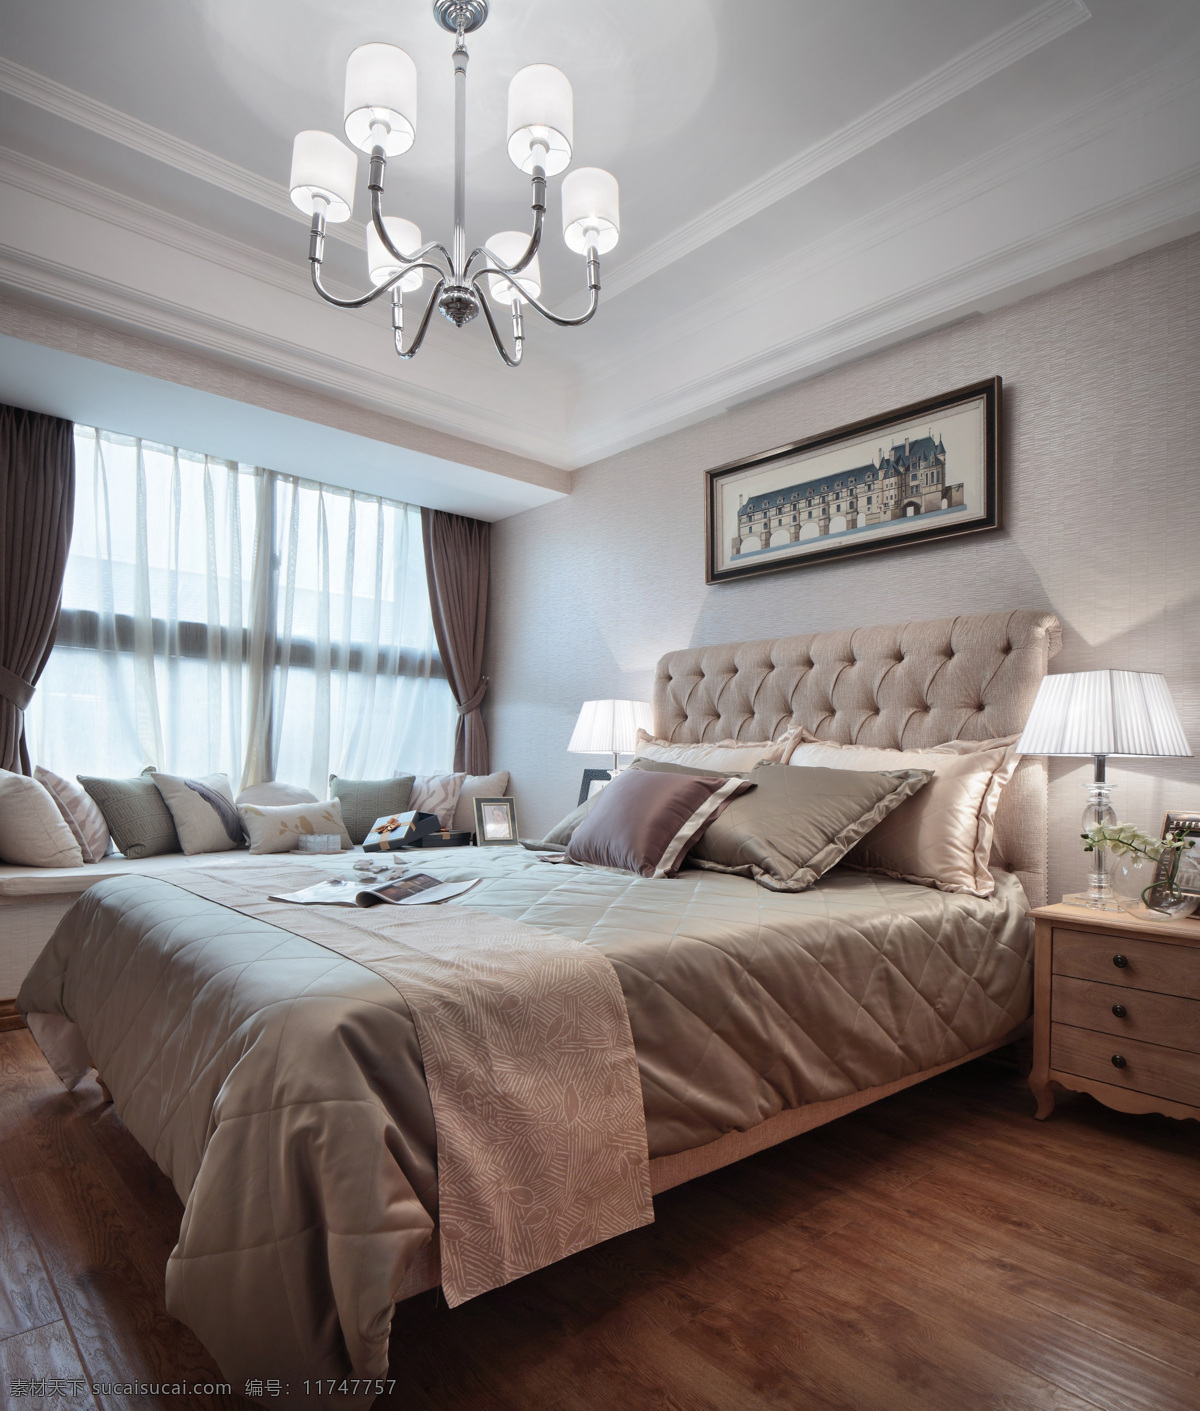 卧室 时尚 大 床 设计图 家居 家居生活 室内设计 装修 室内 家具 装修设计 环境设计 大床